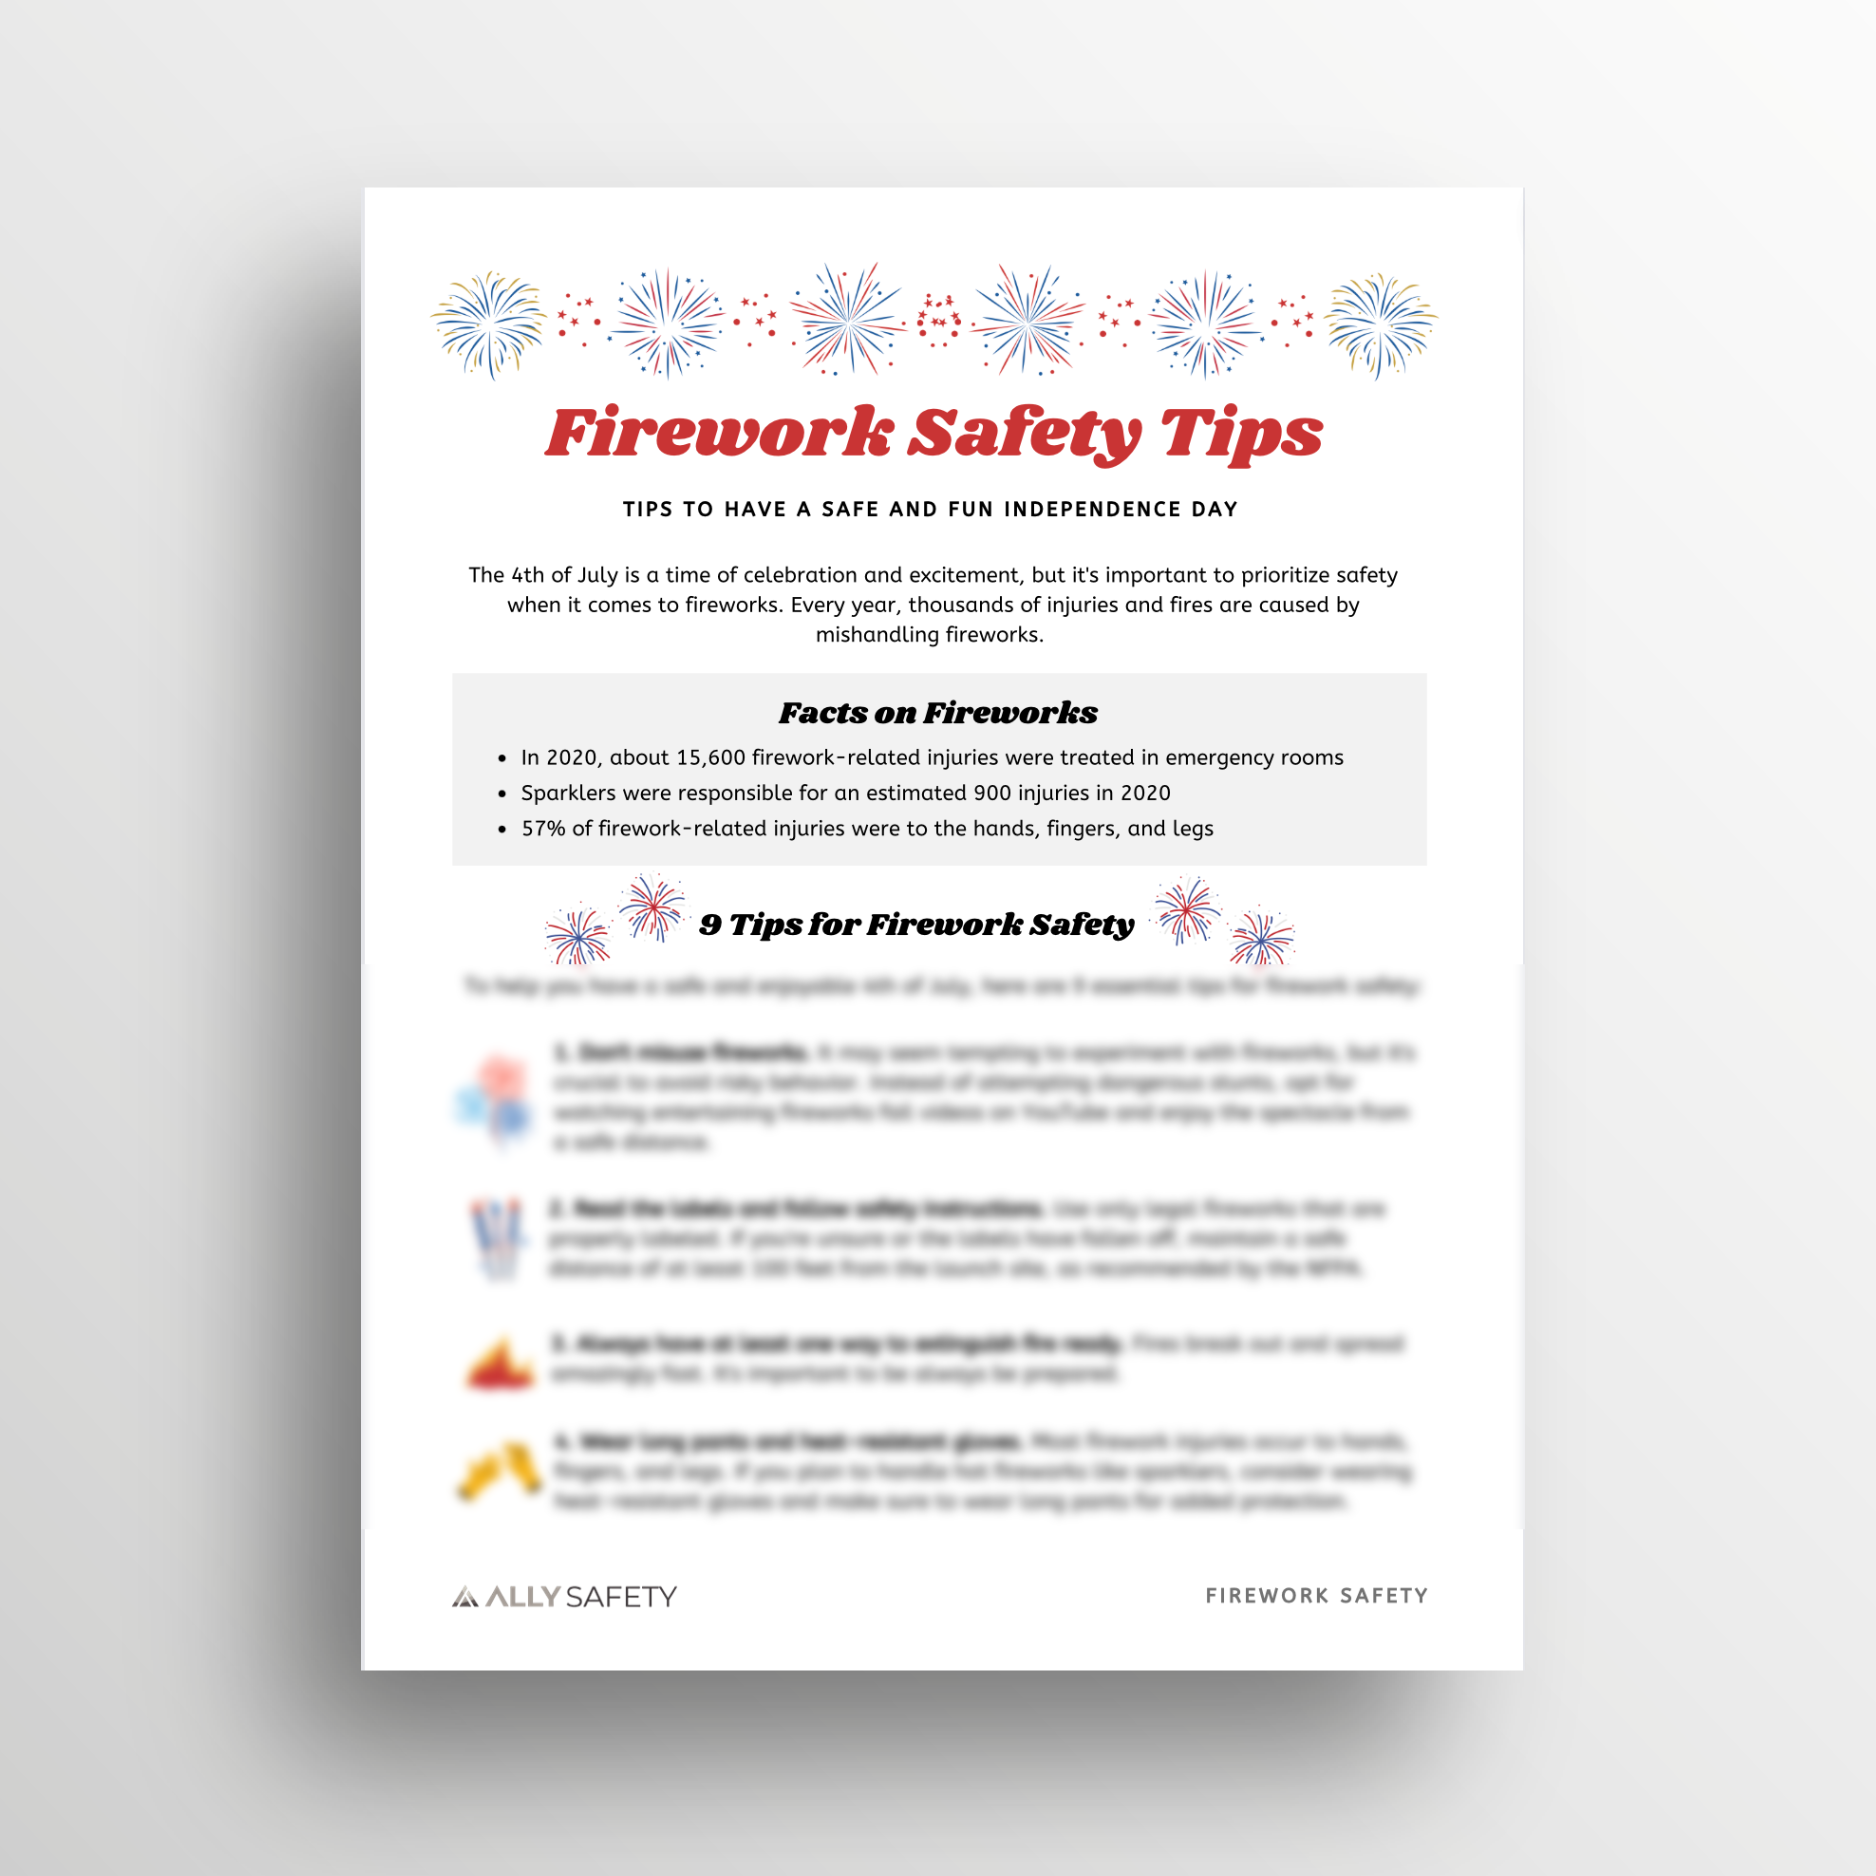 Firework Safety Toolbox Talk